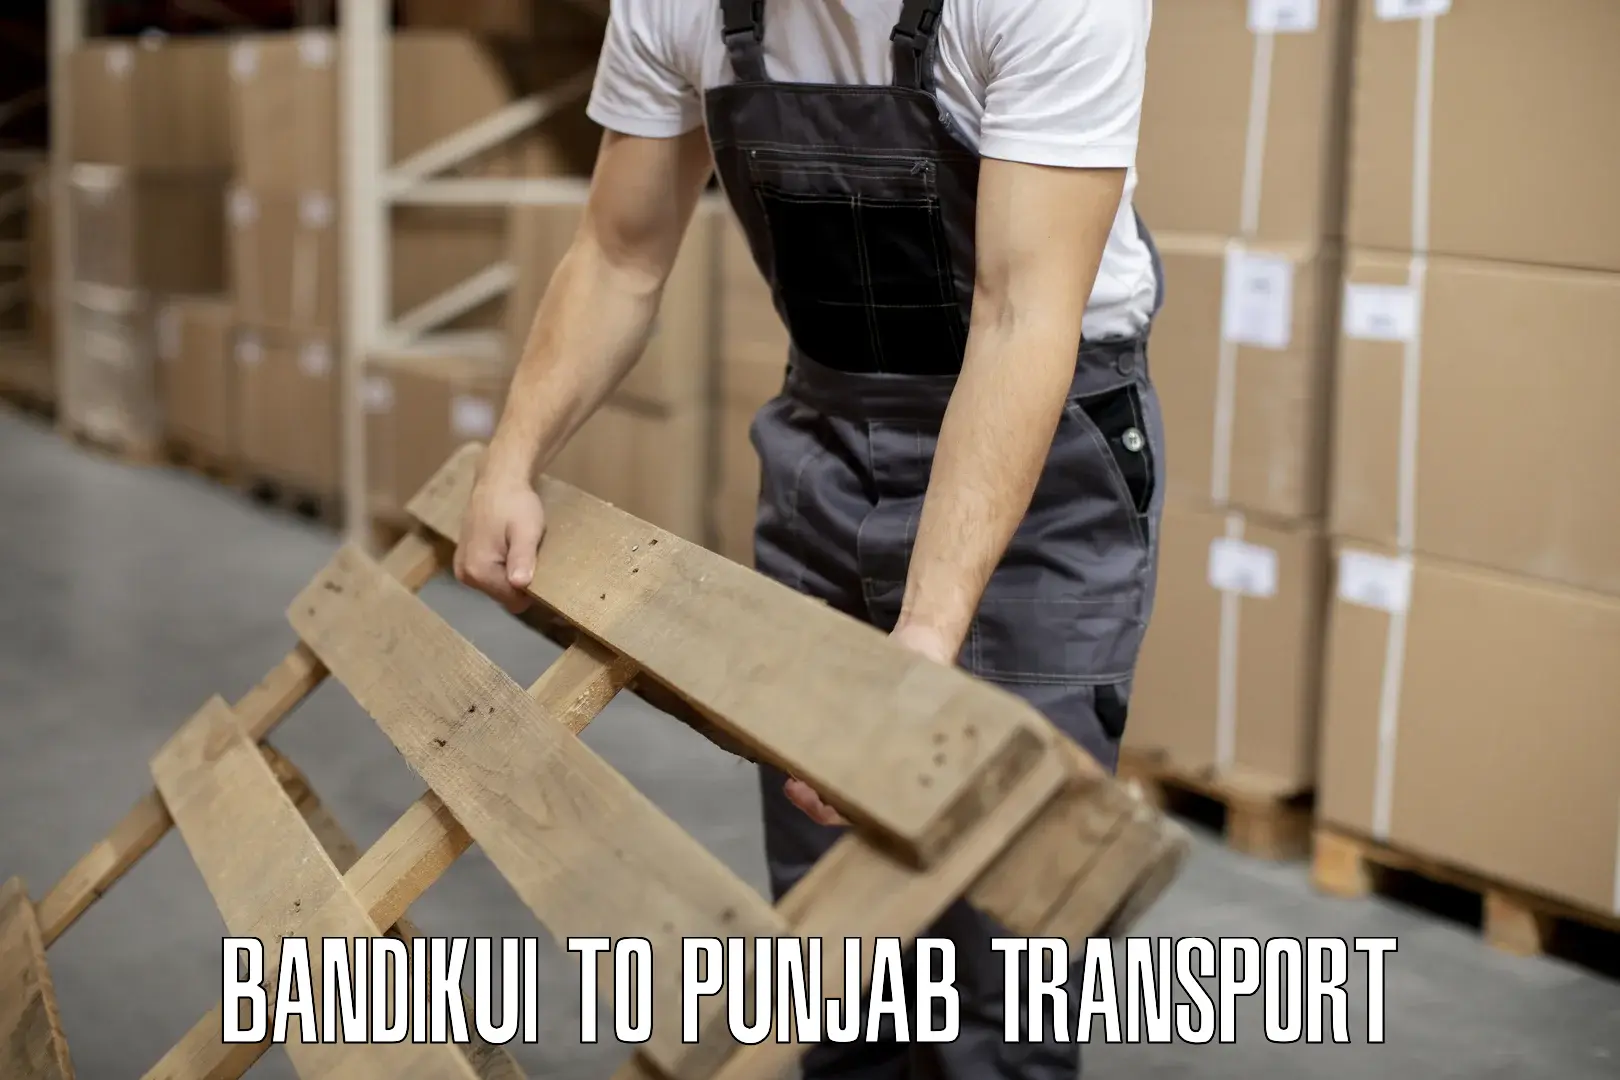 Parcel transport services Bandikui to Kotkapura